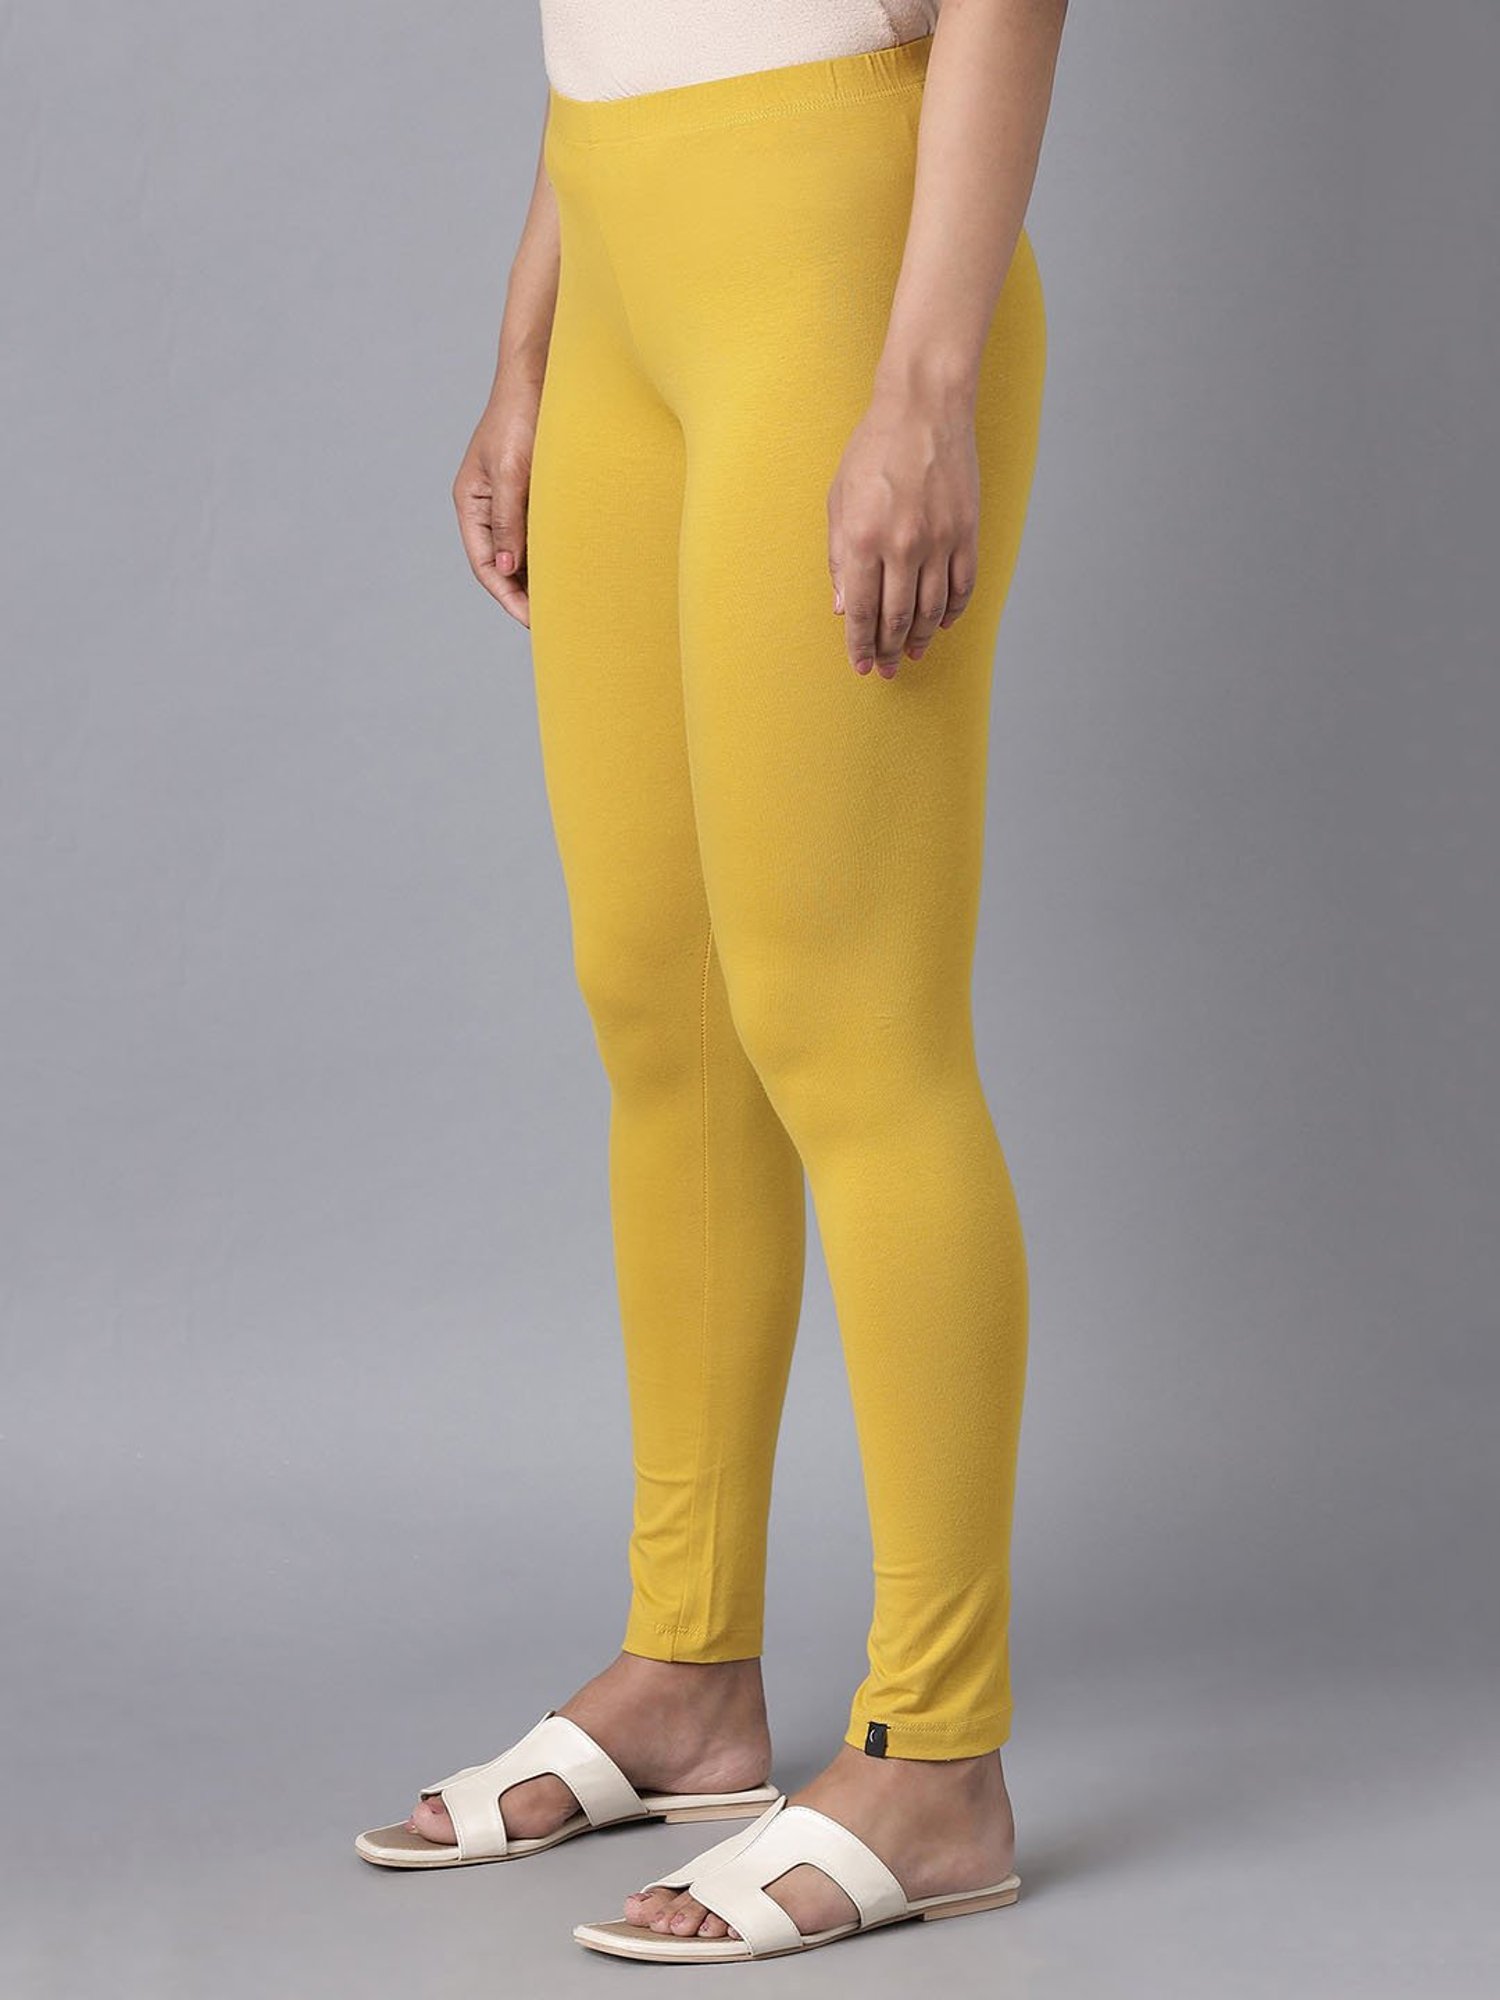 Aurelia Yellow Skinny Fit Leggings